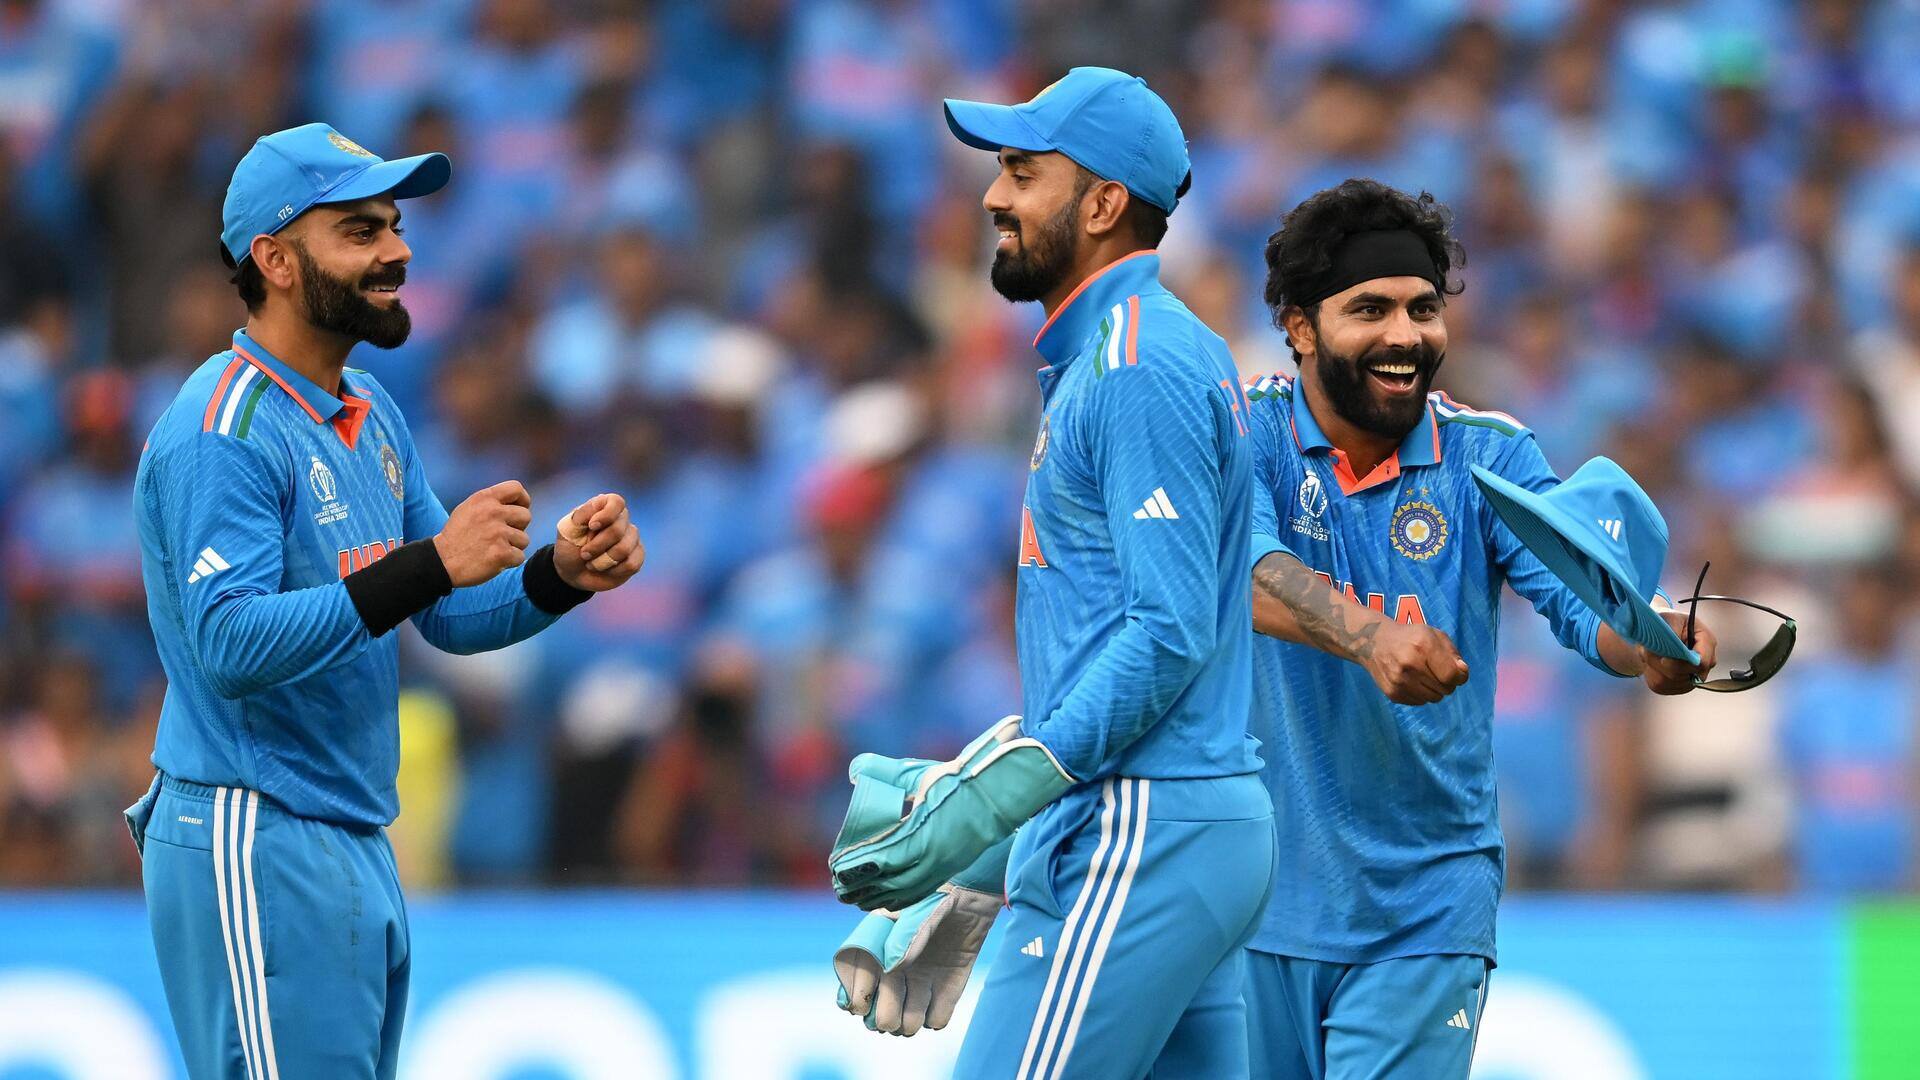 वनडे विश्व कप: भारत ने बांग्लादेश को 7 विकेट से हराया, मैच में बने ये रिकॉर्ड्स 